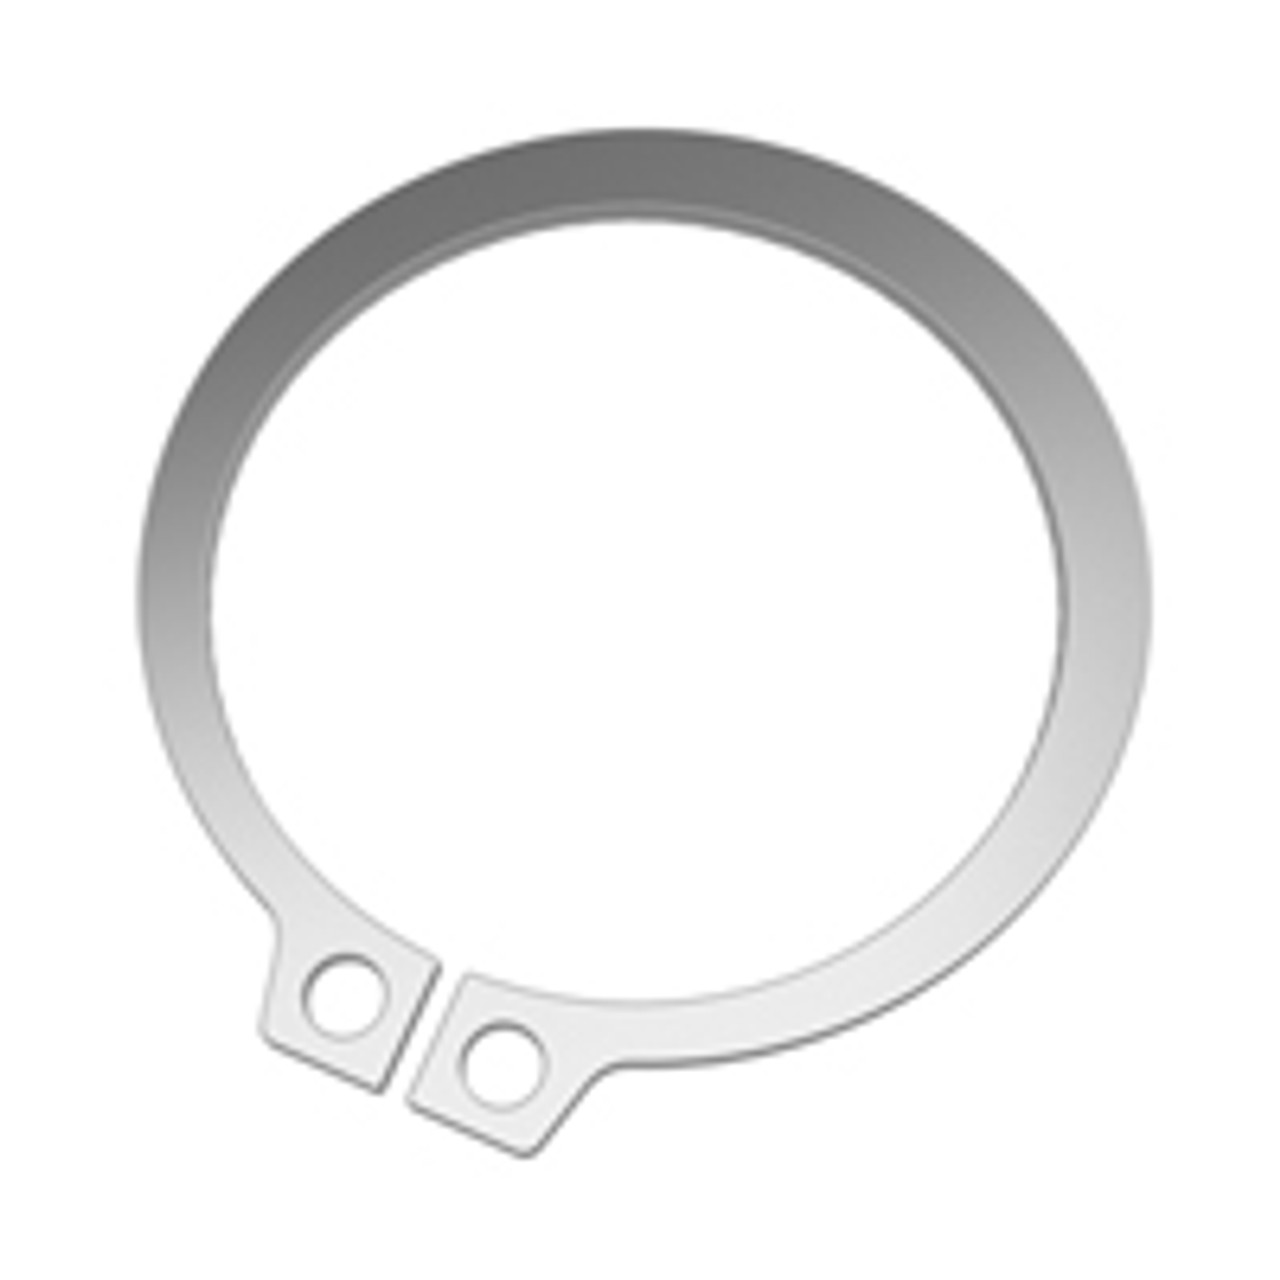 External SAE Stainless Standard Retaining Ring  SH-0025-H